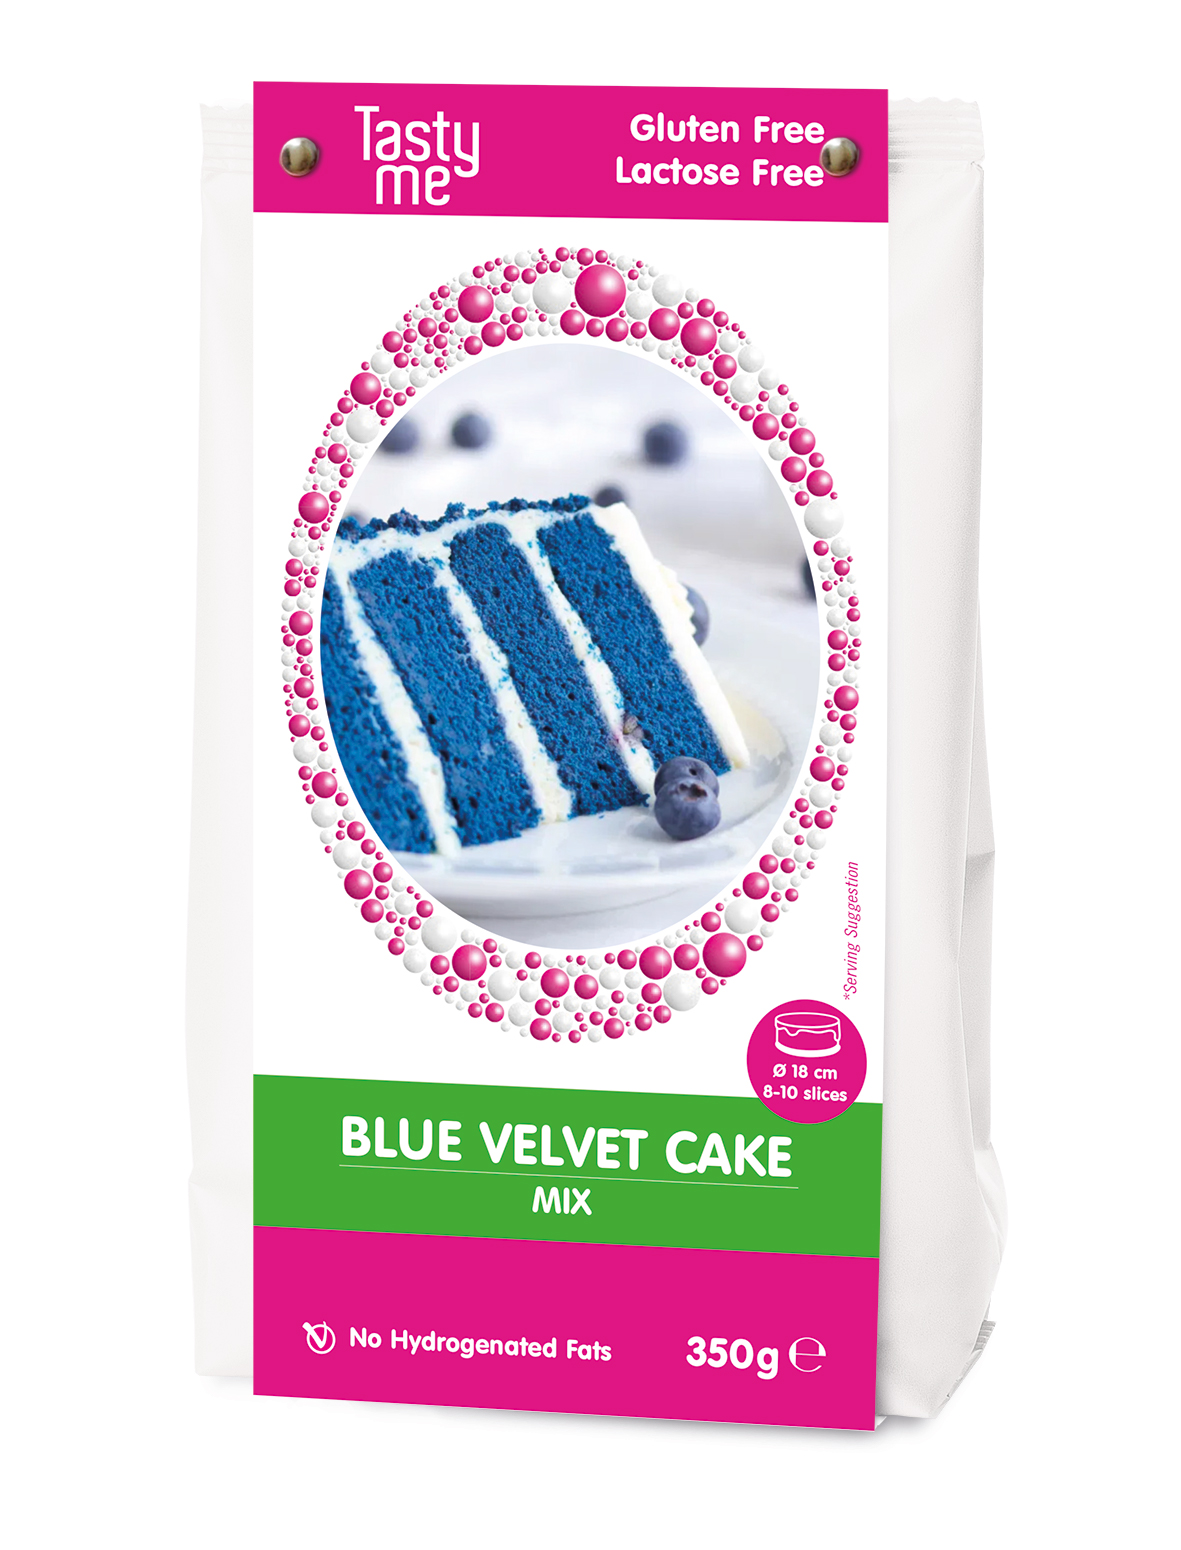 Blue velvet cake mix 350g - gluten-free